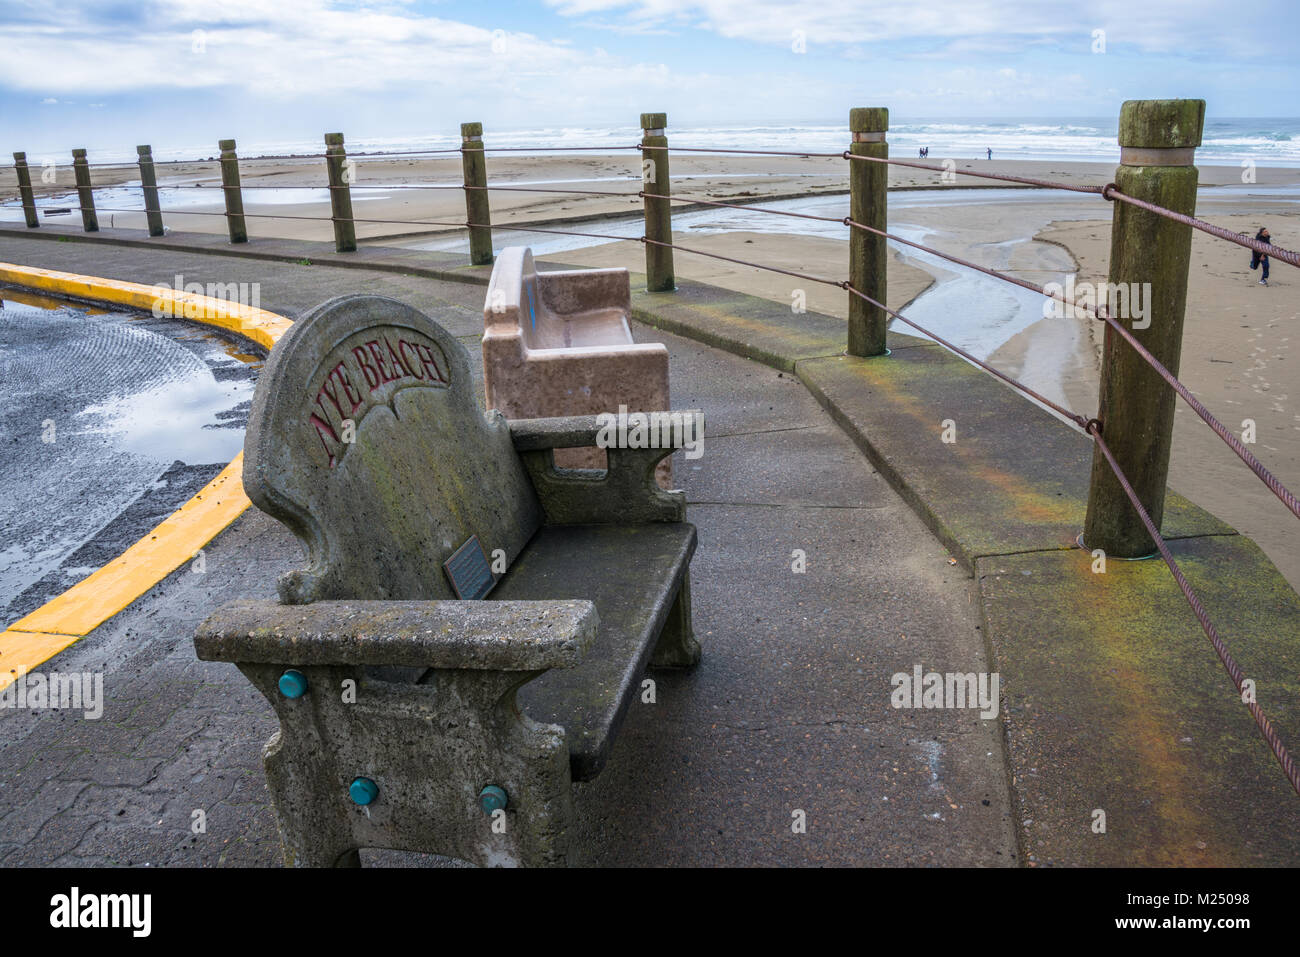 Los bancos del parque de cemento en el Histórico Nye Beach, Newport, Oregon Foto de stock